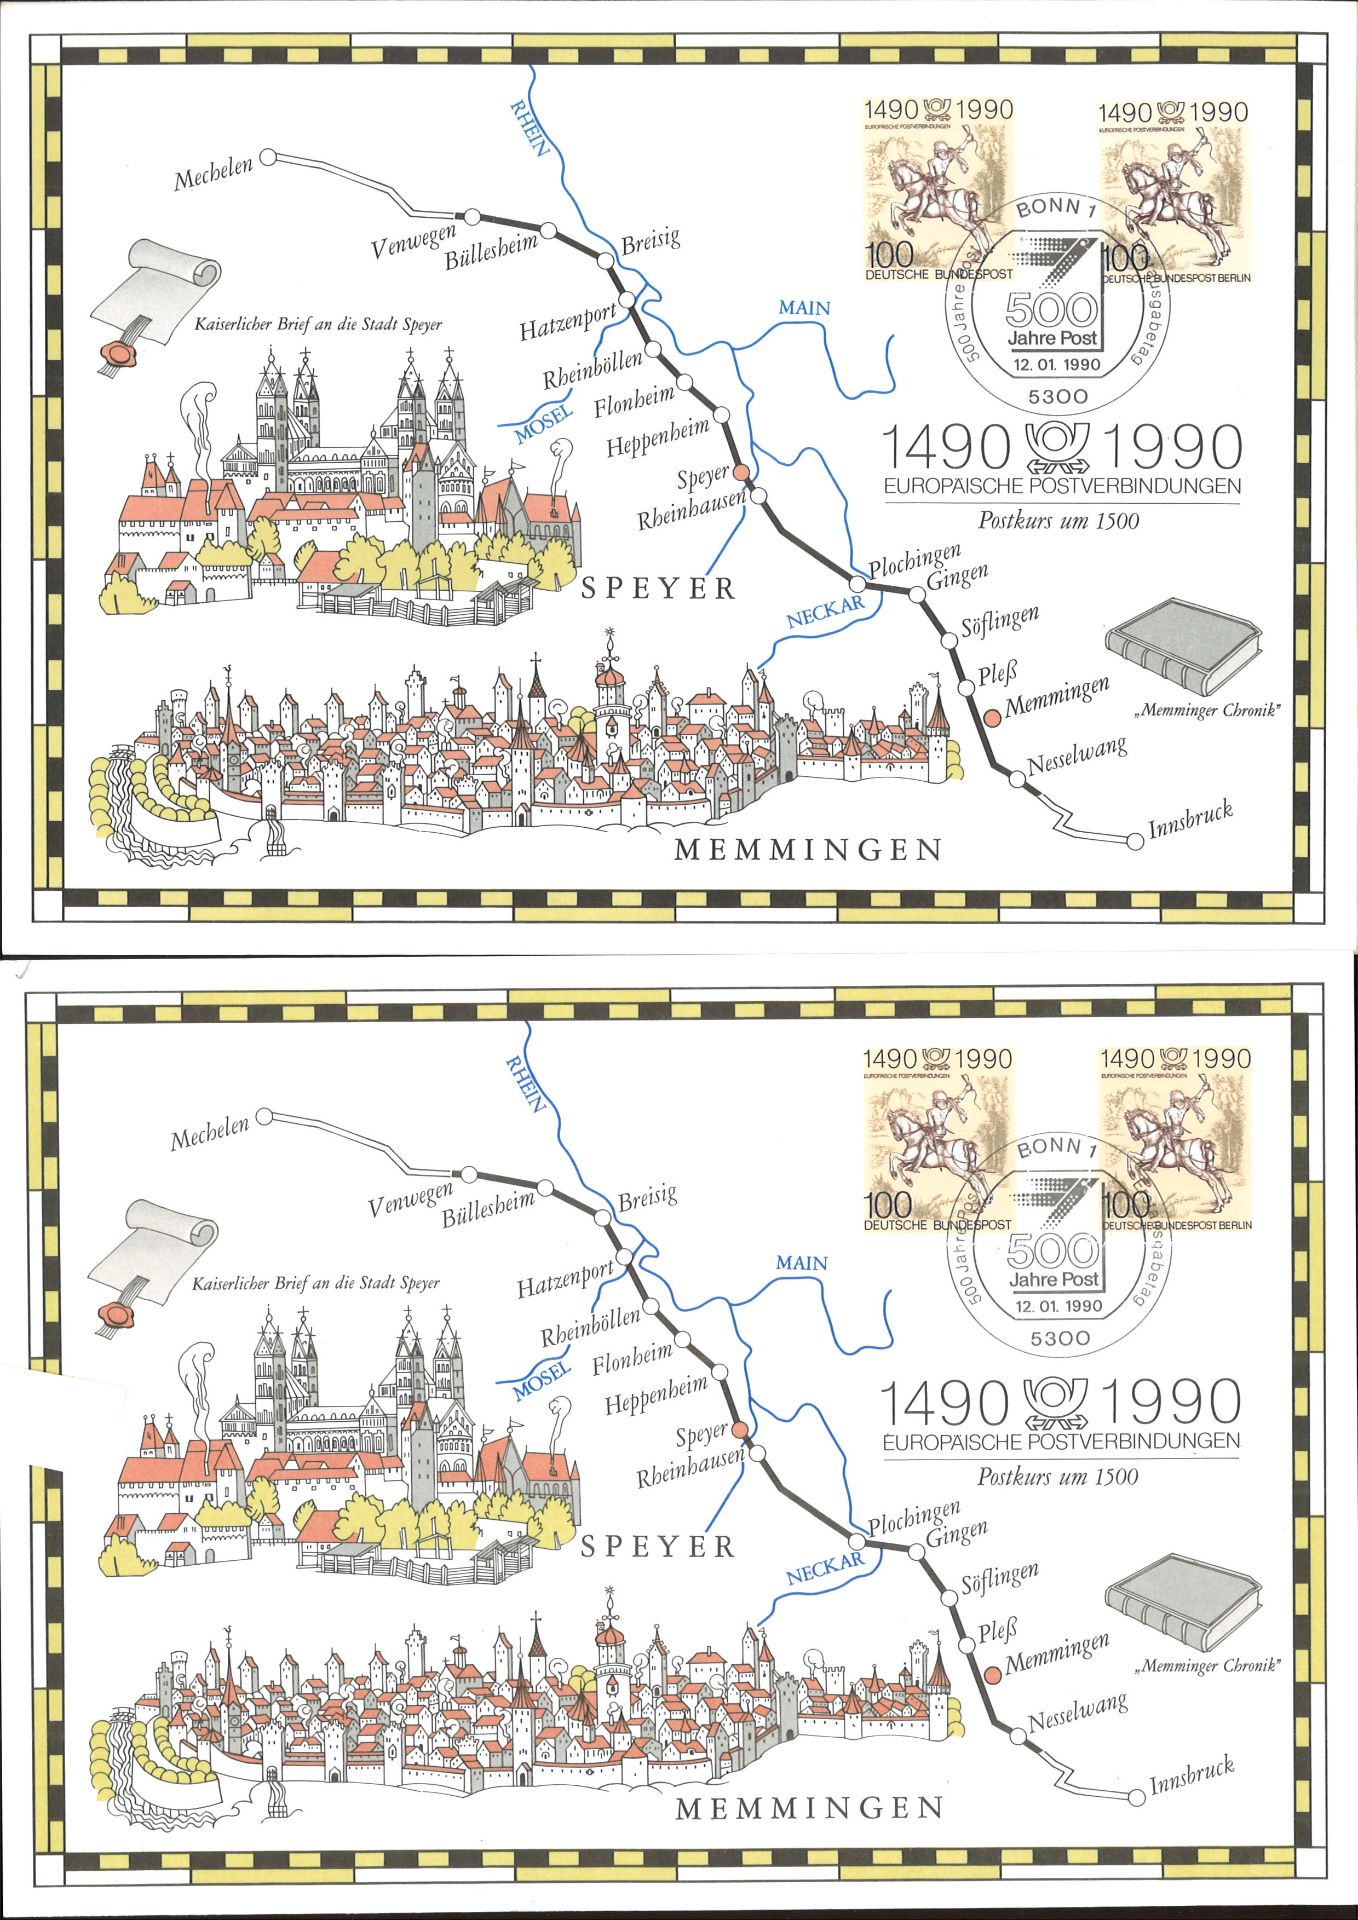 BRD, sechs verschiedene Erinnerungsblätter und Marken "500 Jahre Postverbindung in Europa". - Image 2 of 4